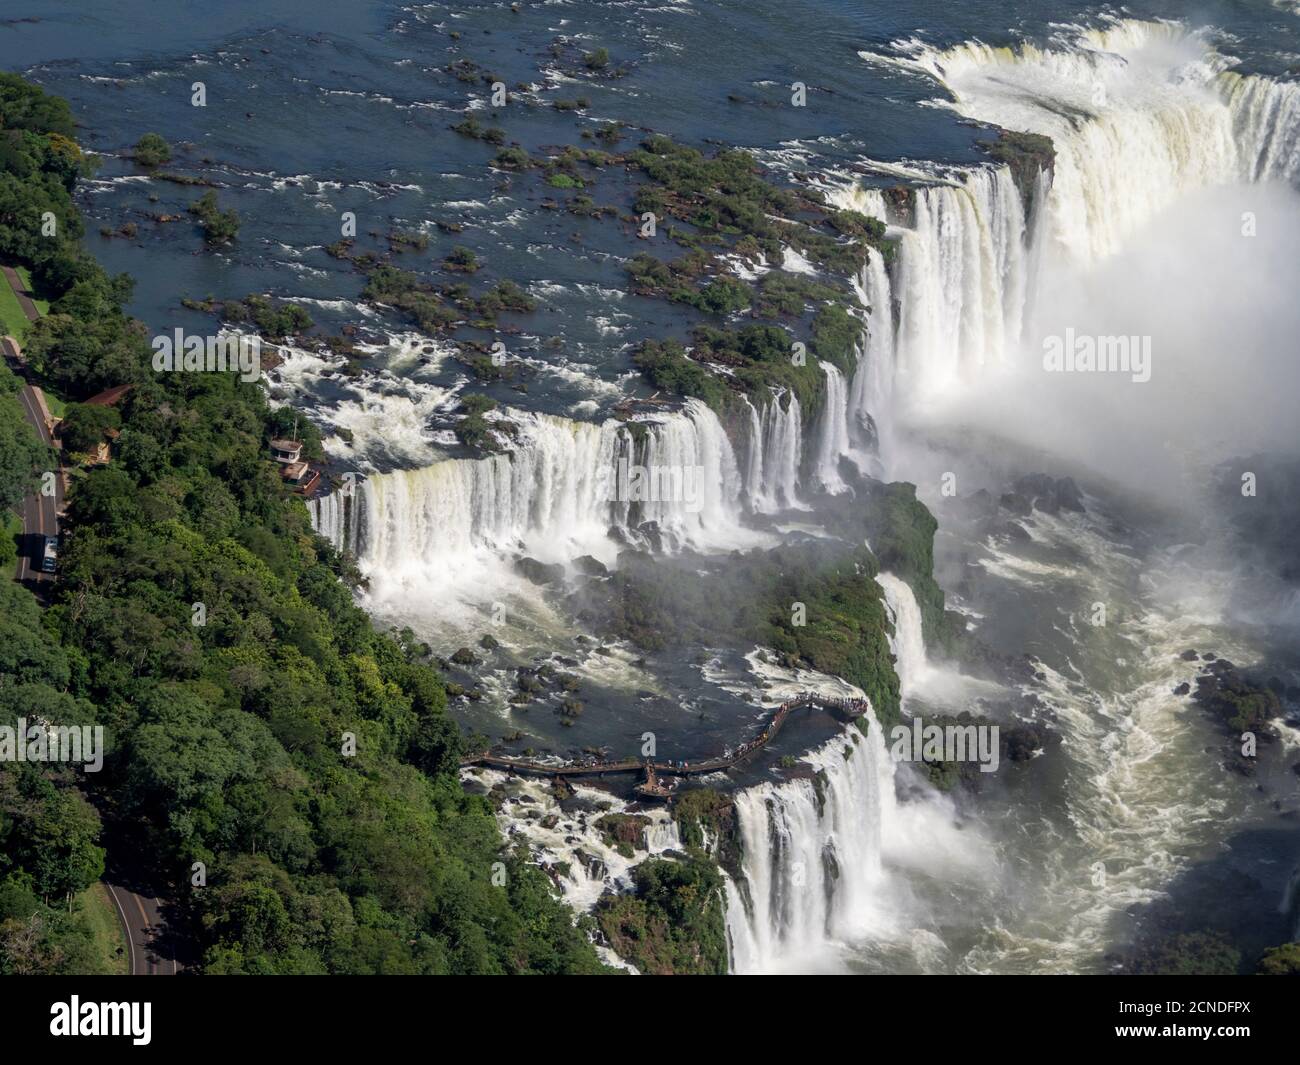 Vue aérienne en hélicoptère des chutes d'Iguaçu (Cataratas do Iguaçu), site classé au patrimoine mondial de l'UNESCO, Parana, Brésil Banque D'Images